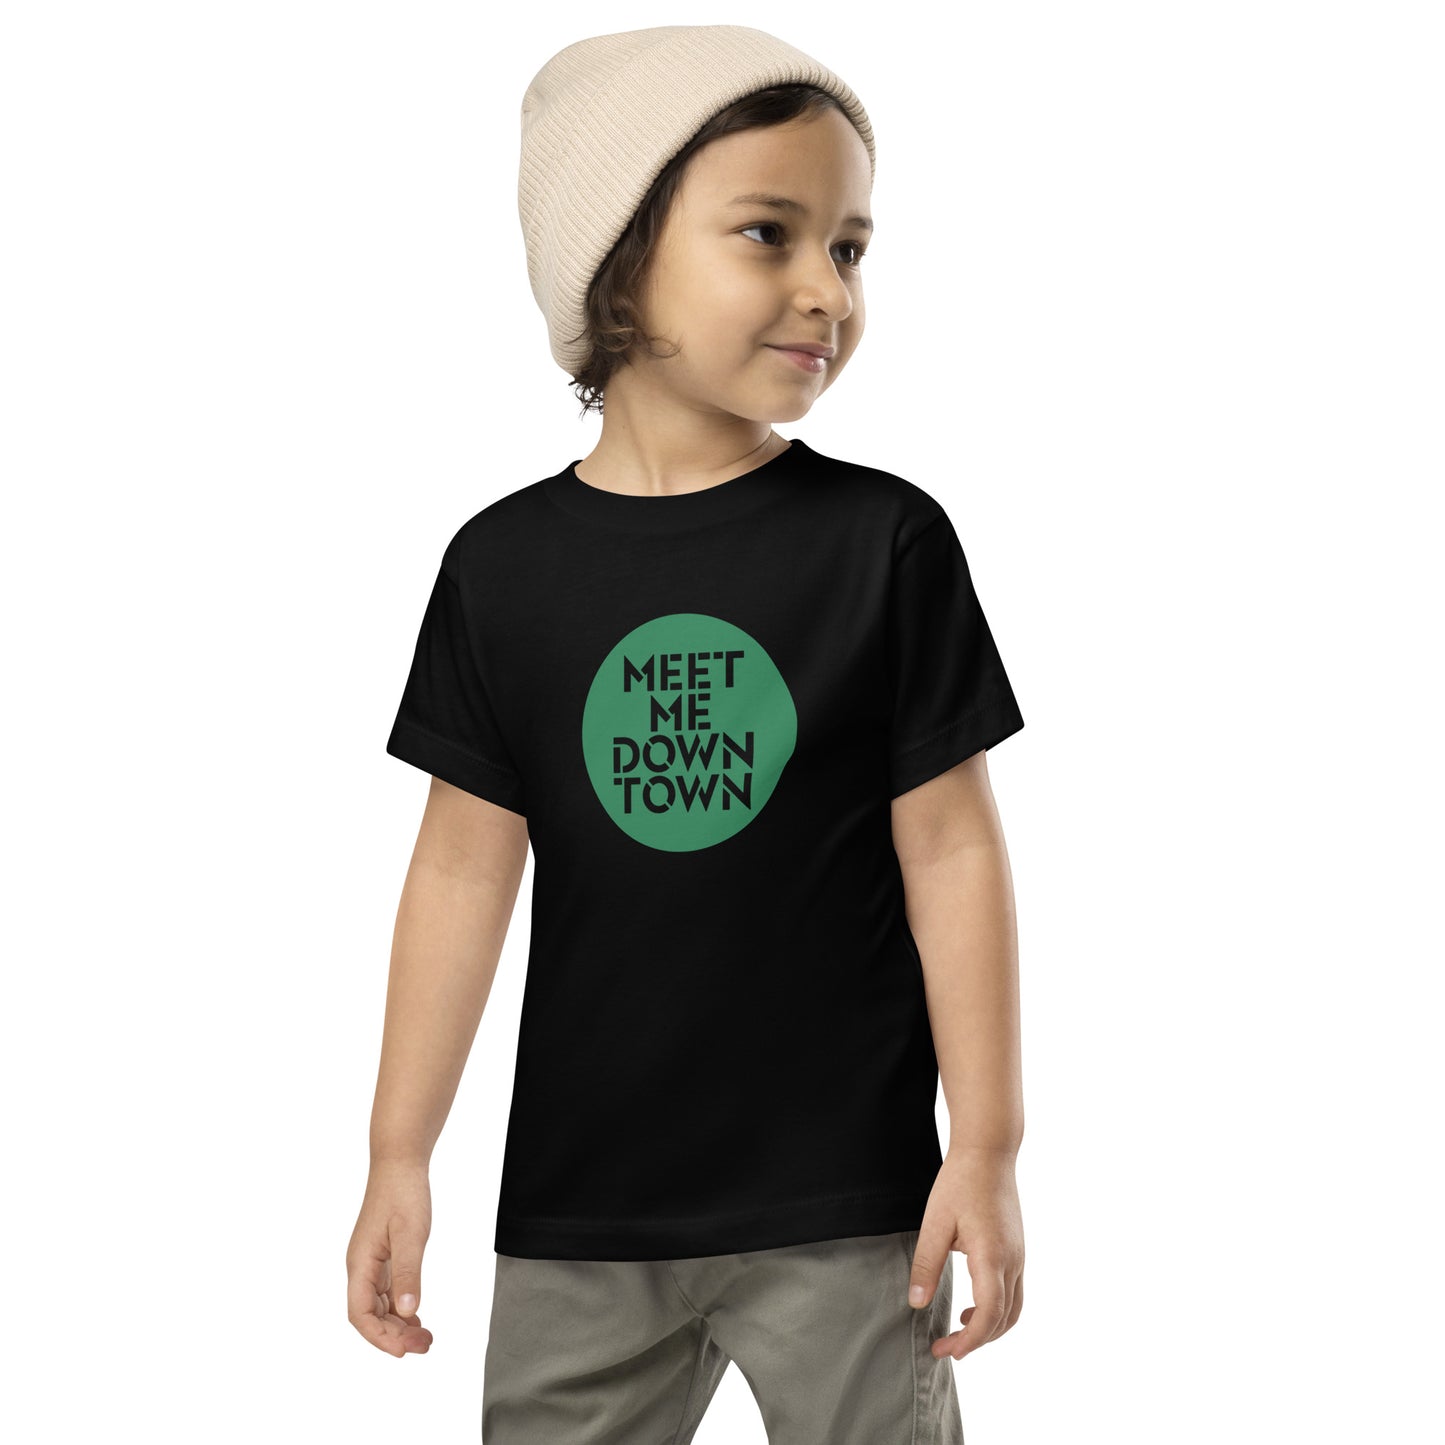 "Meet Me Downtown" Green Kids/Toddler Short Sleeve Tee